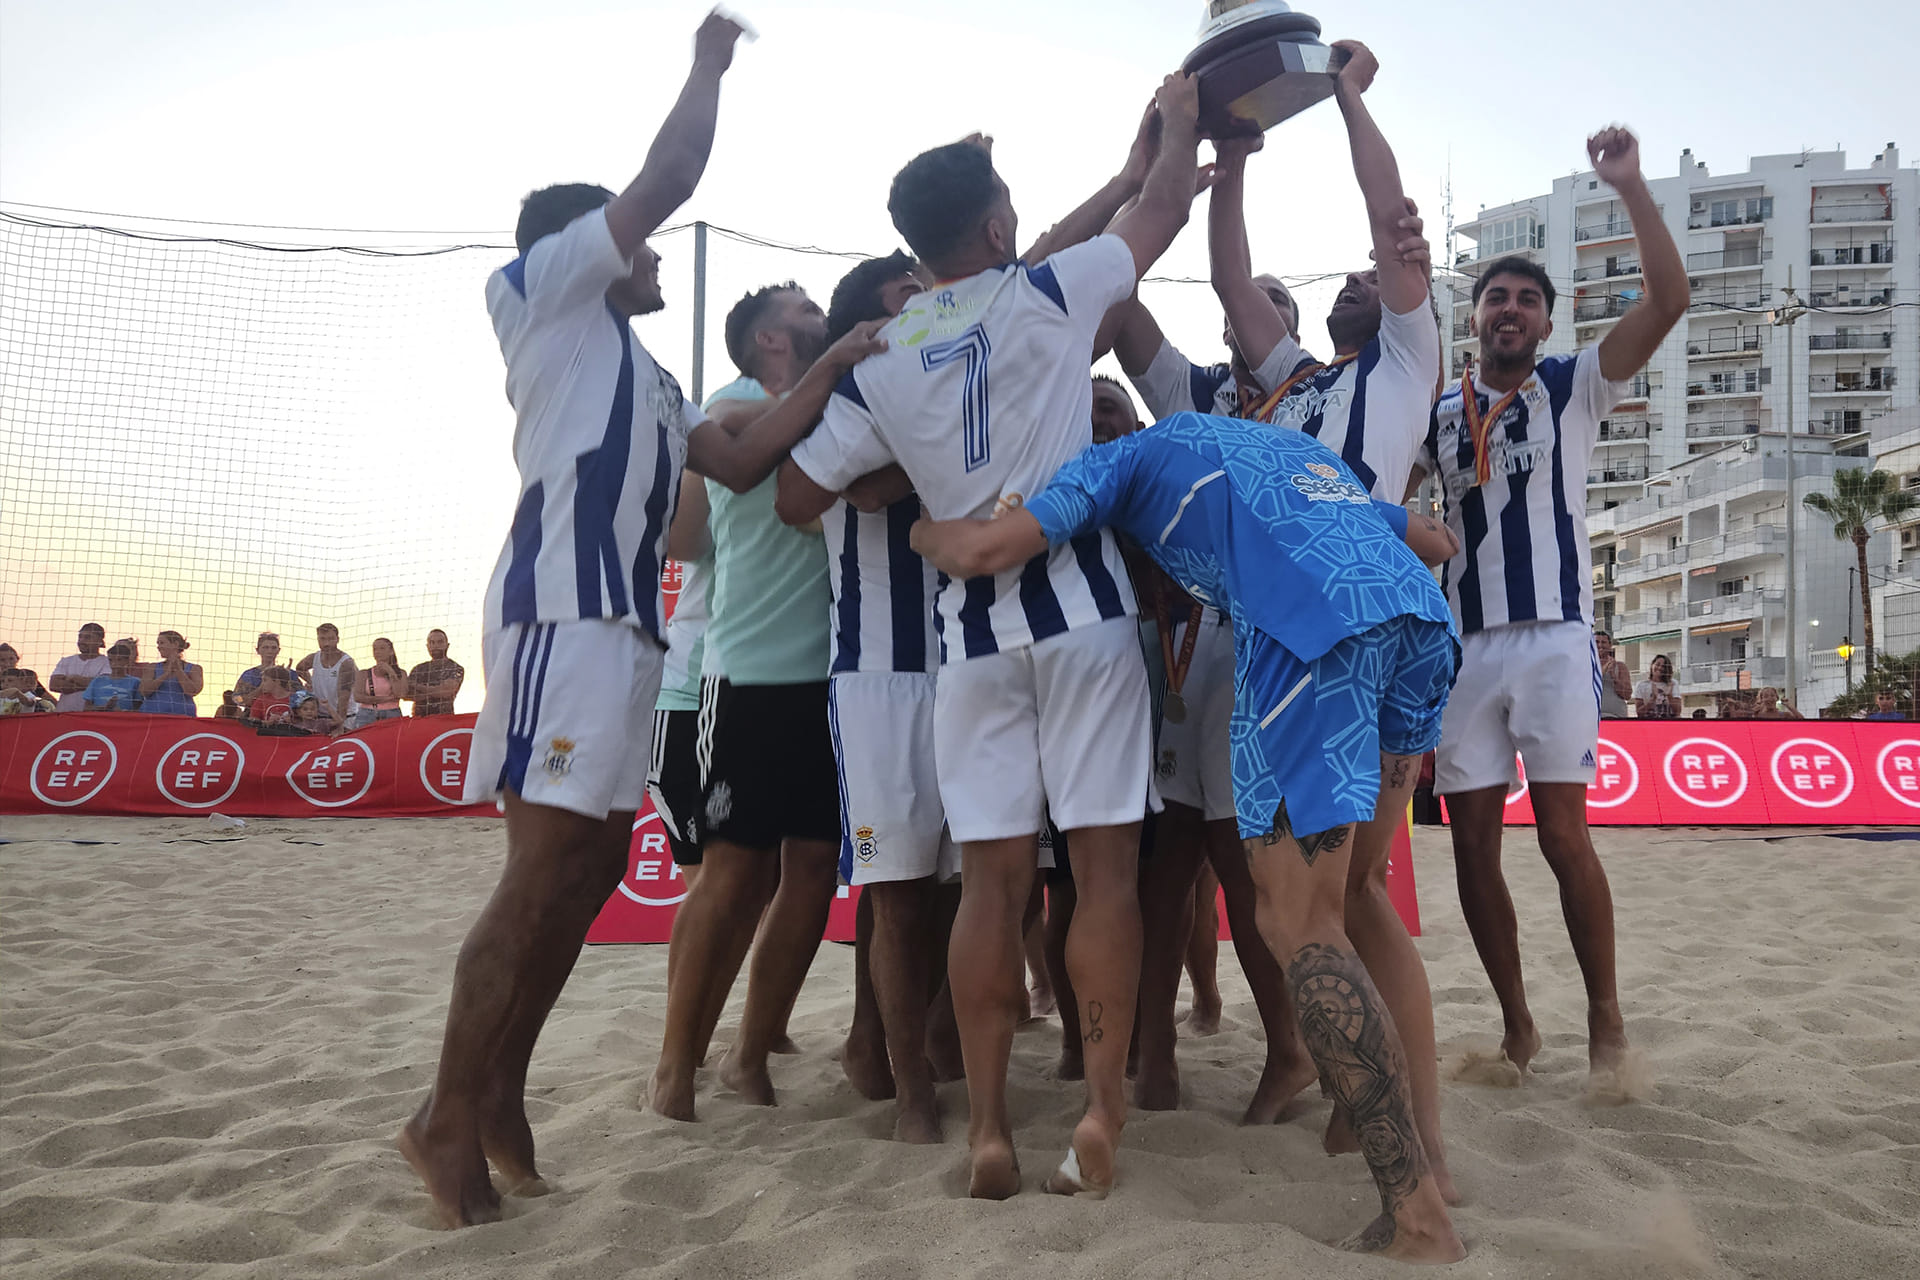 La major Final Four i la dada del creixement “amb passes de gegant” del futbol platja a Espanya